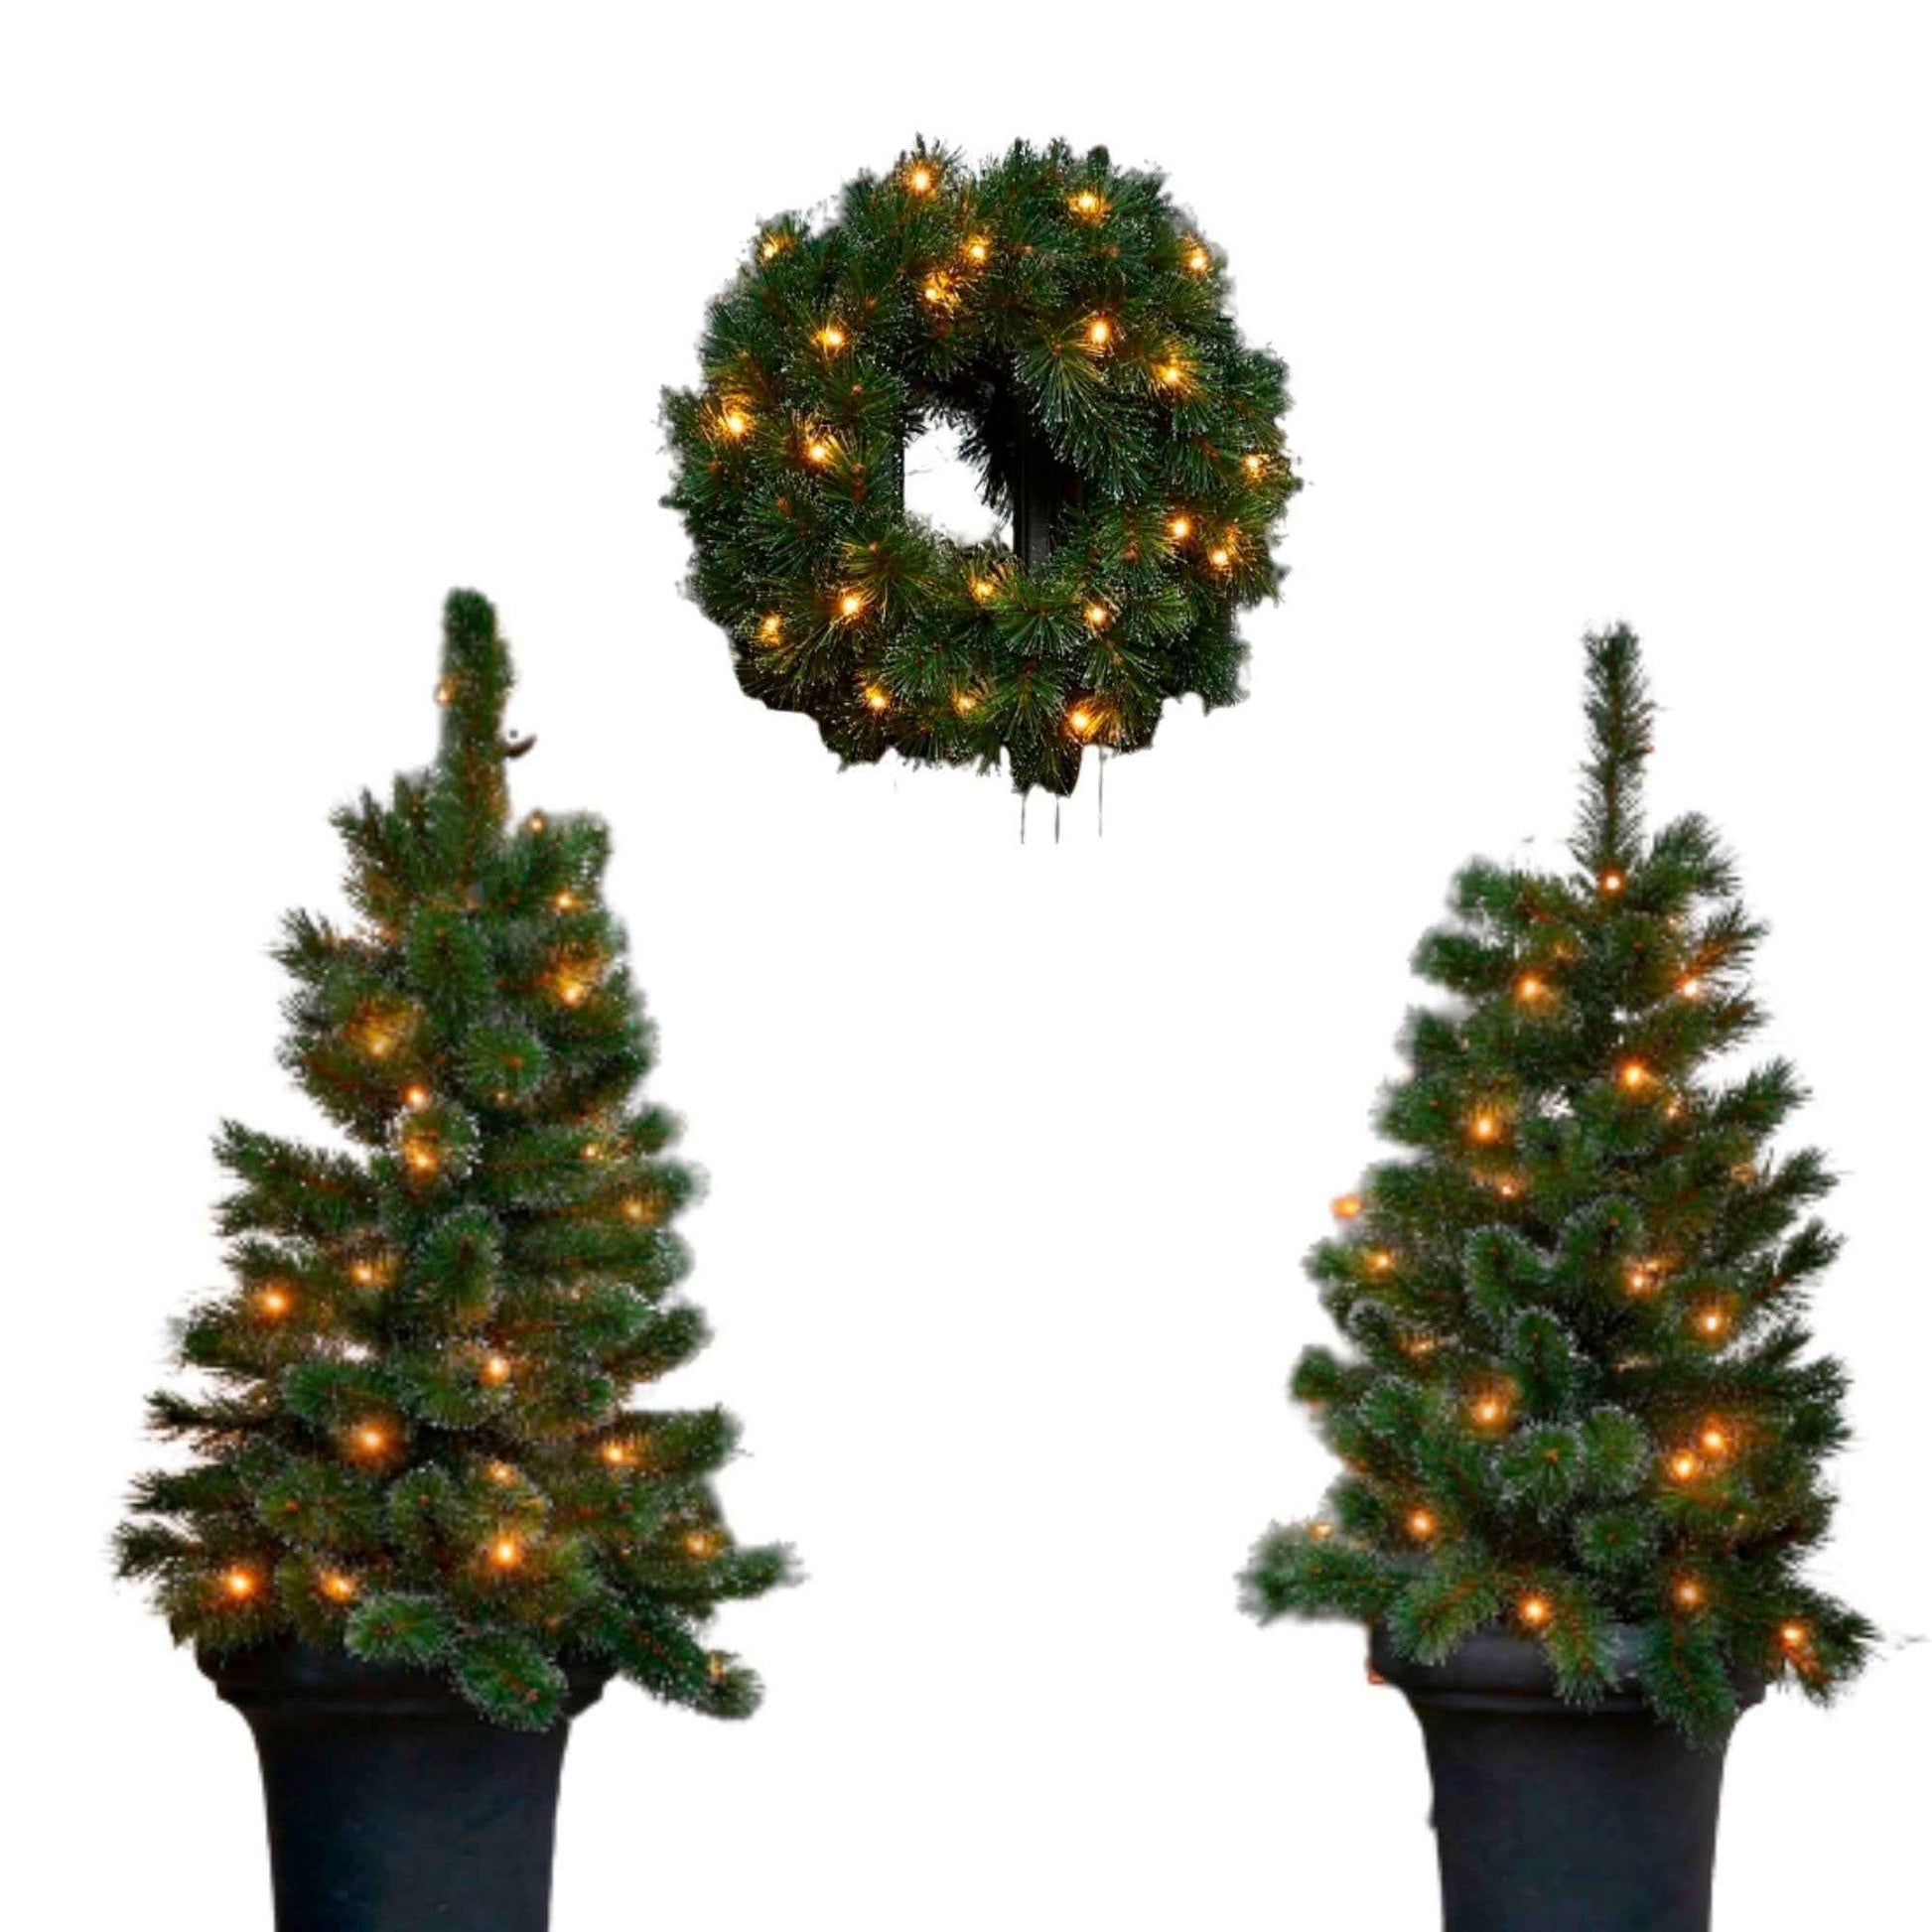 Black Box 2x Besneeuwde kunstkerstboom + 1x Kerstkrans Glendon incl. ledverlichting - Kunstkerstbomen